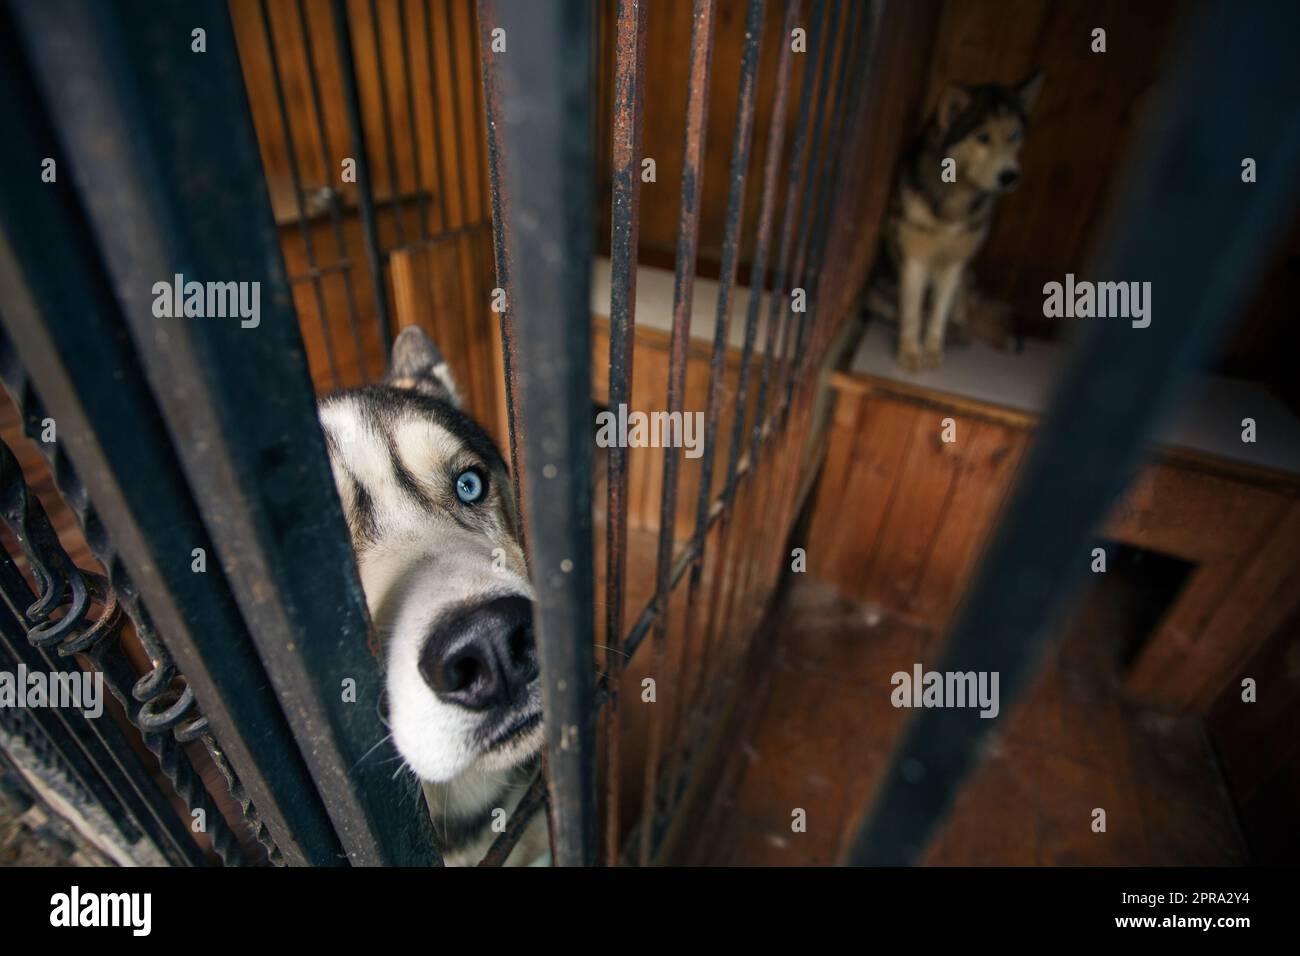 Primo piano della museruola di un cane husky dagli occhi blu seduto in una voliera. Foto Stock